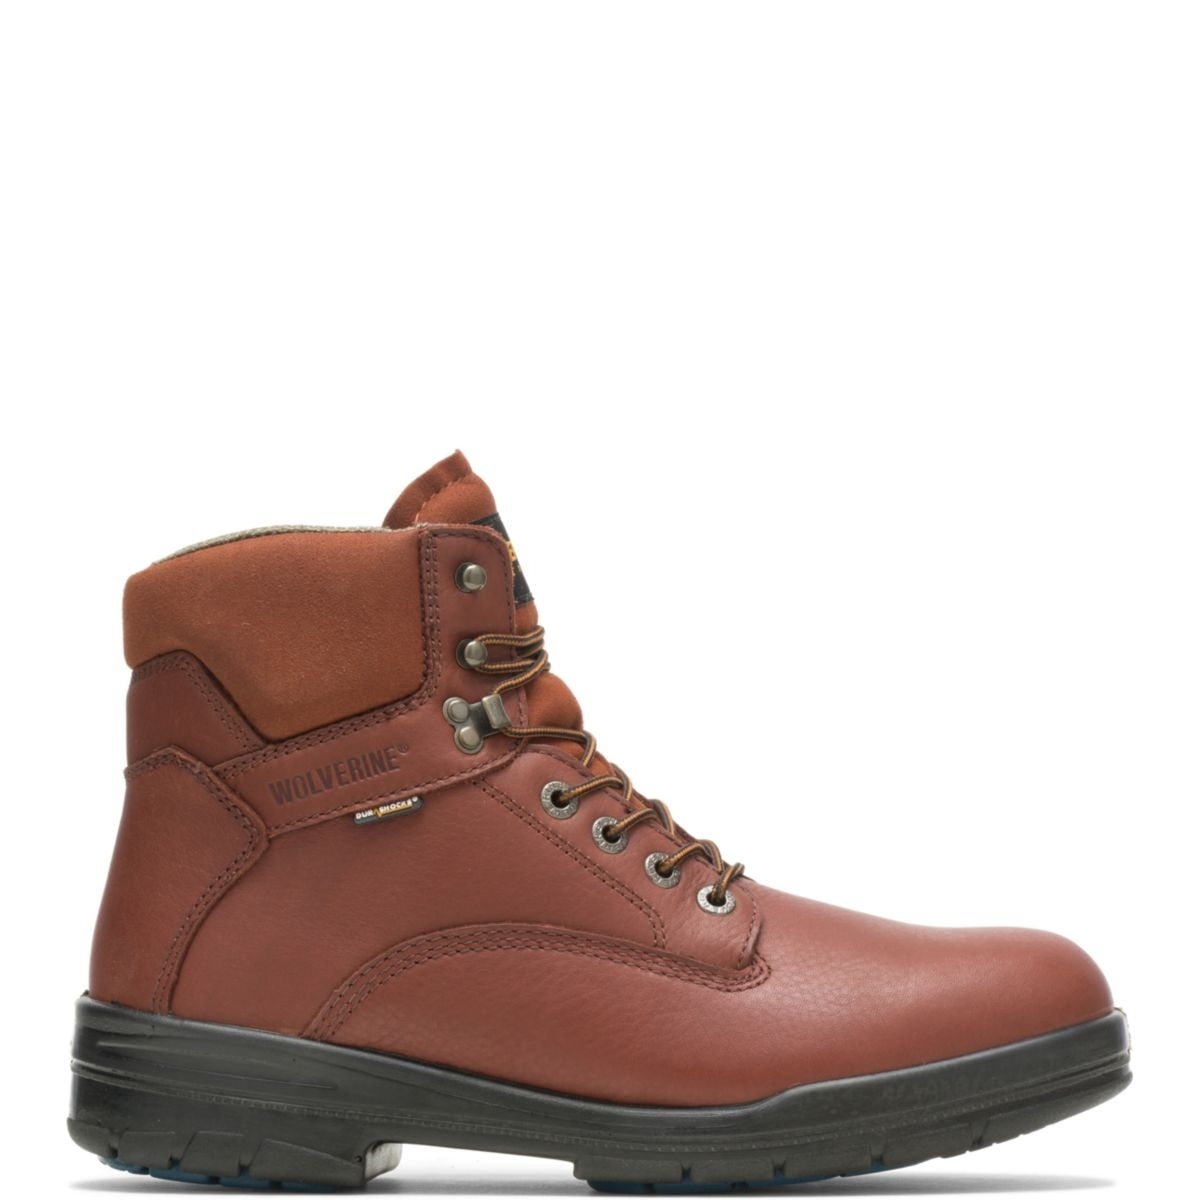 WOLVERINE Men's 6 DuraShocksÂ® Steel Toe Direct-Attach Work Boot Brown - W03120 BROWN - BROWN, 9.5 Wide